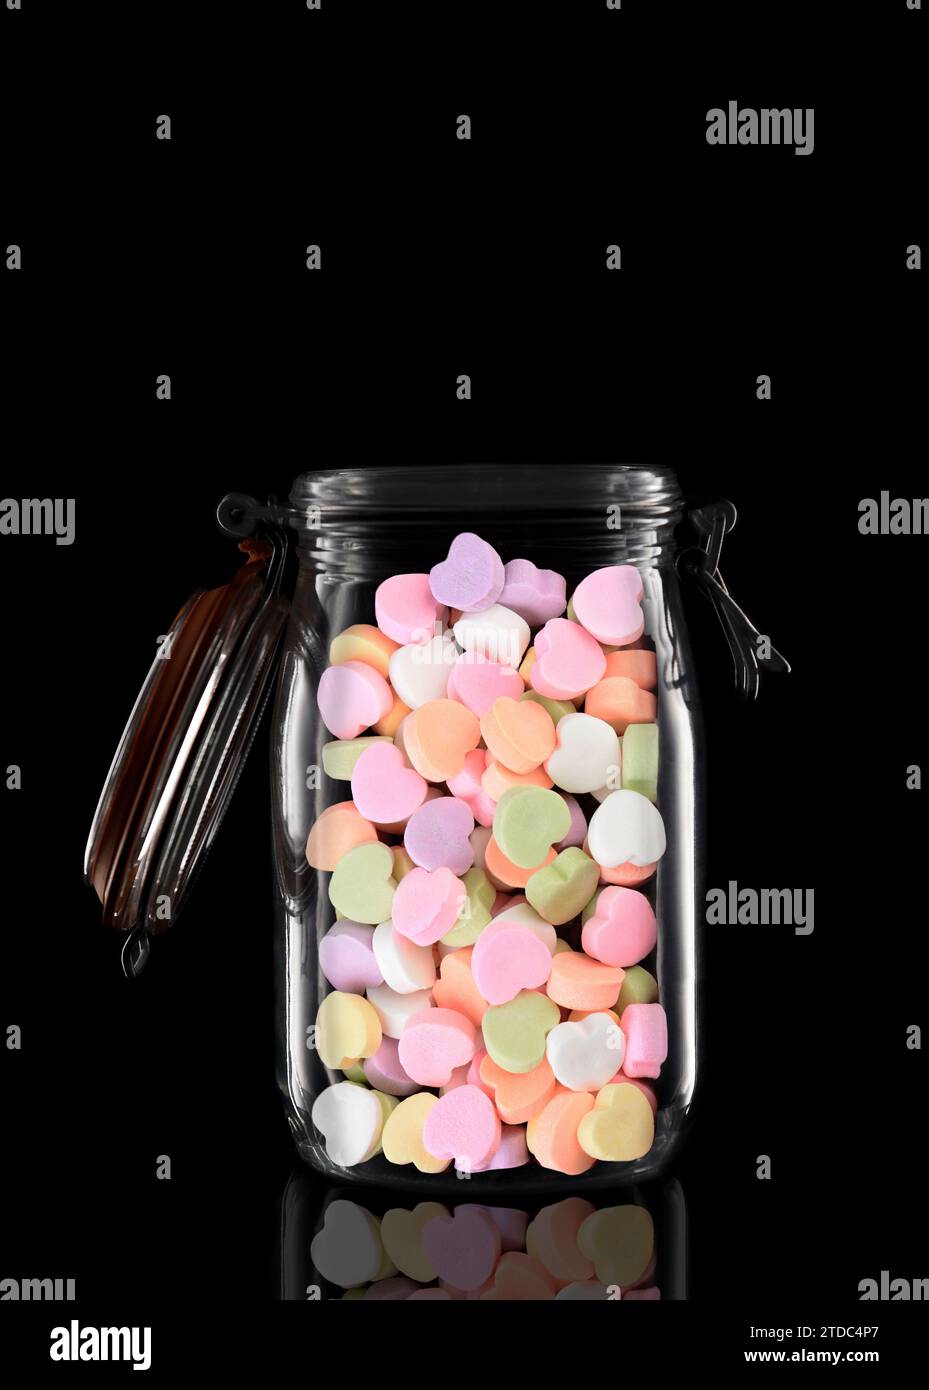 Un pot de rangement ou de mise en conserve en verre rempli de coeurs Valentines Candy isolés sur noir avec reflet, avec couvercle ouvert. Banque D'Images